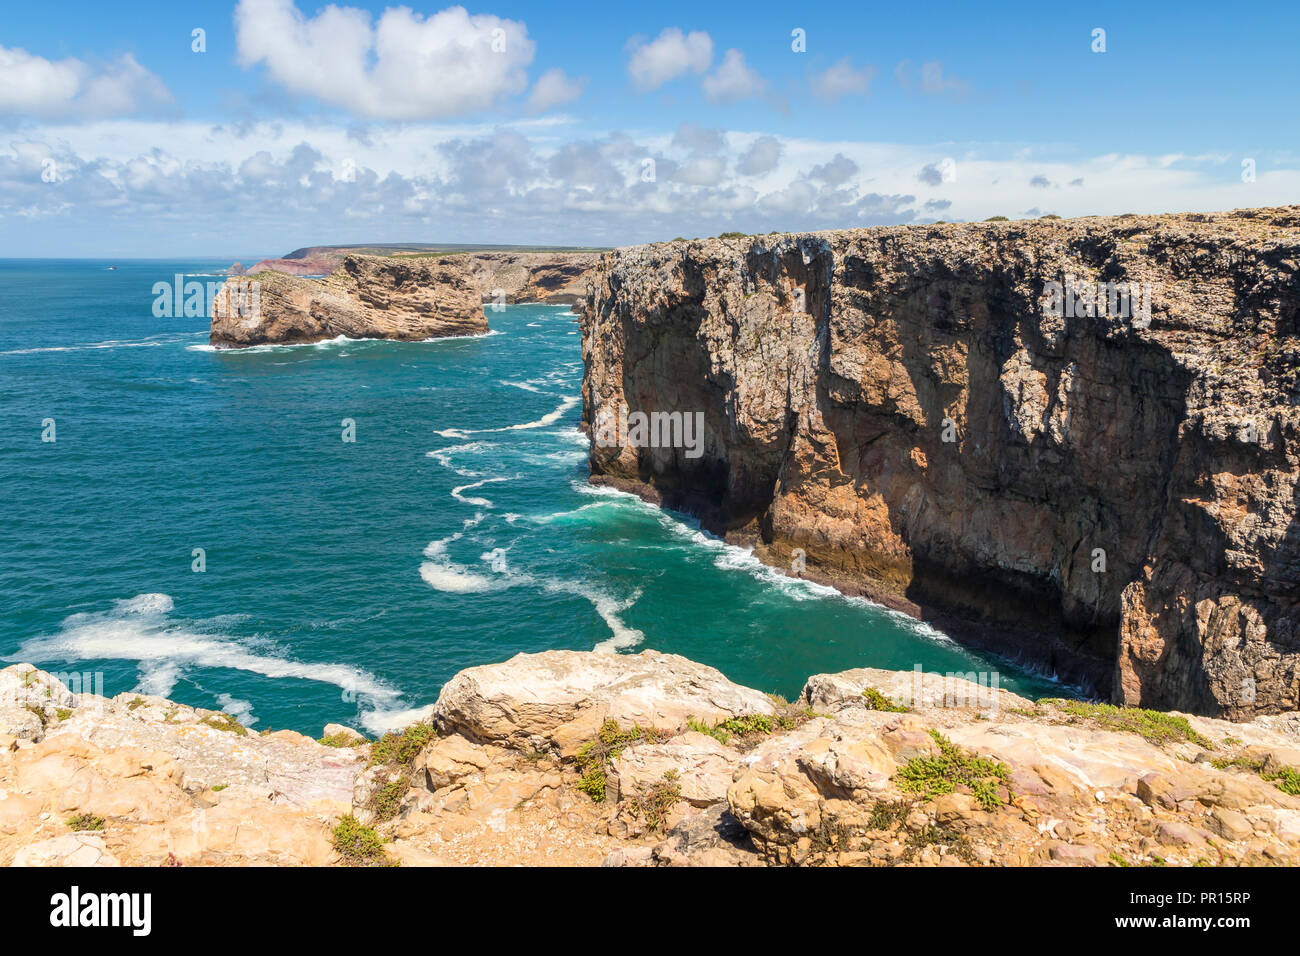 La côte rocheuse du Cap Saint-Vincent, Lagos, Algarve, Portugal, Europe Banque D'Images